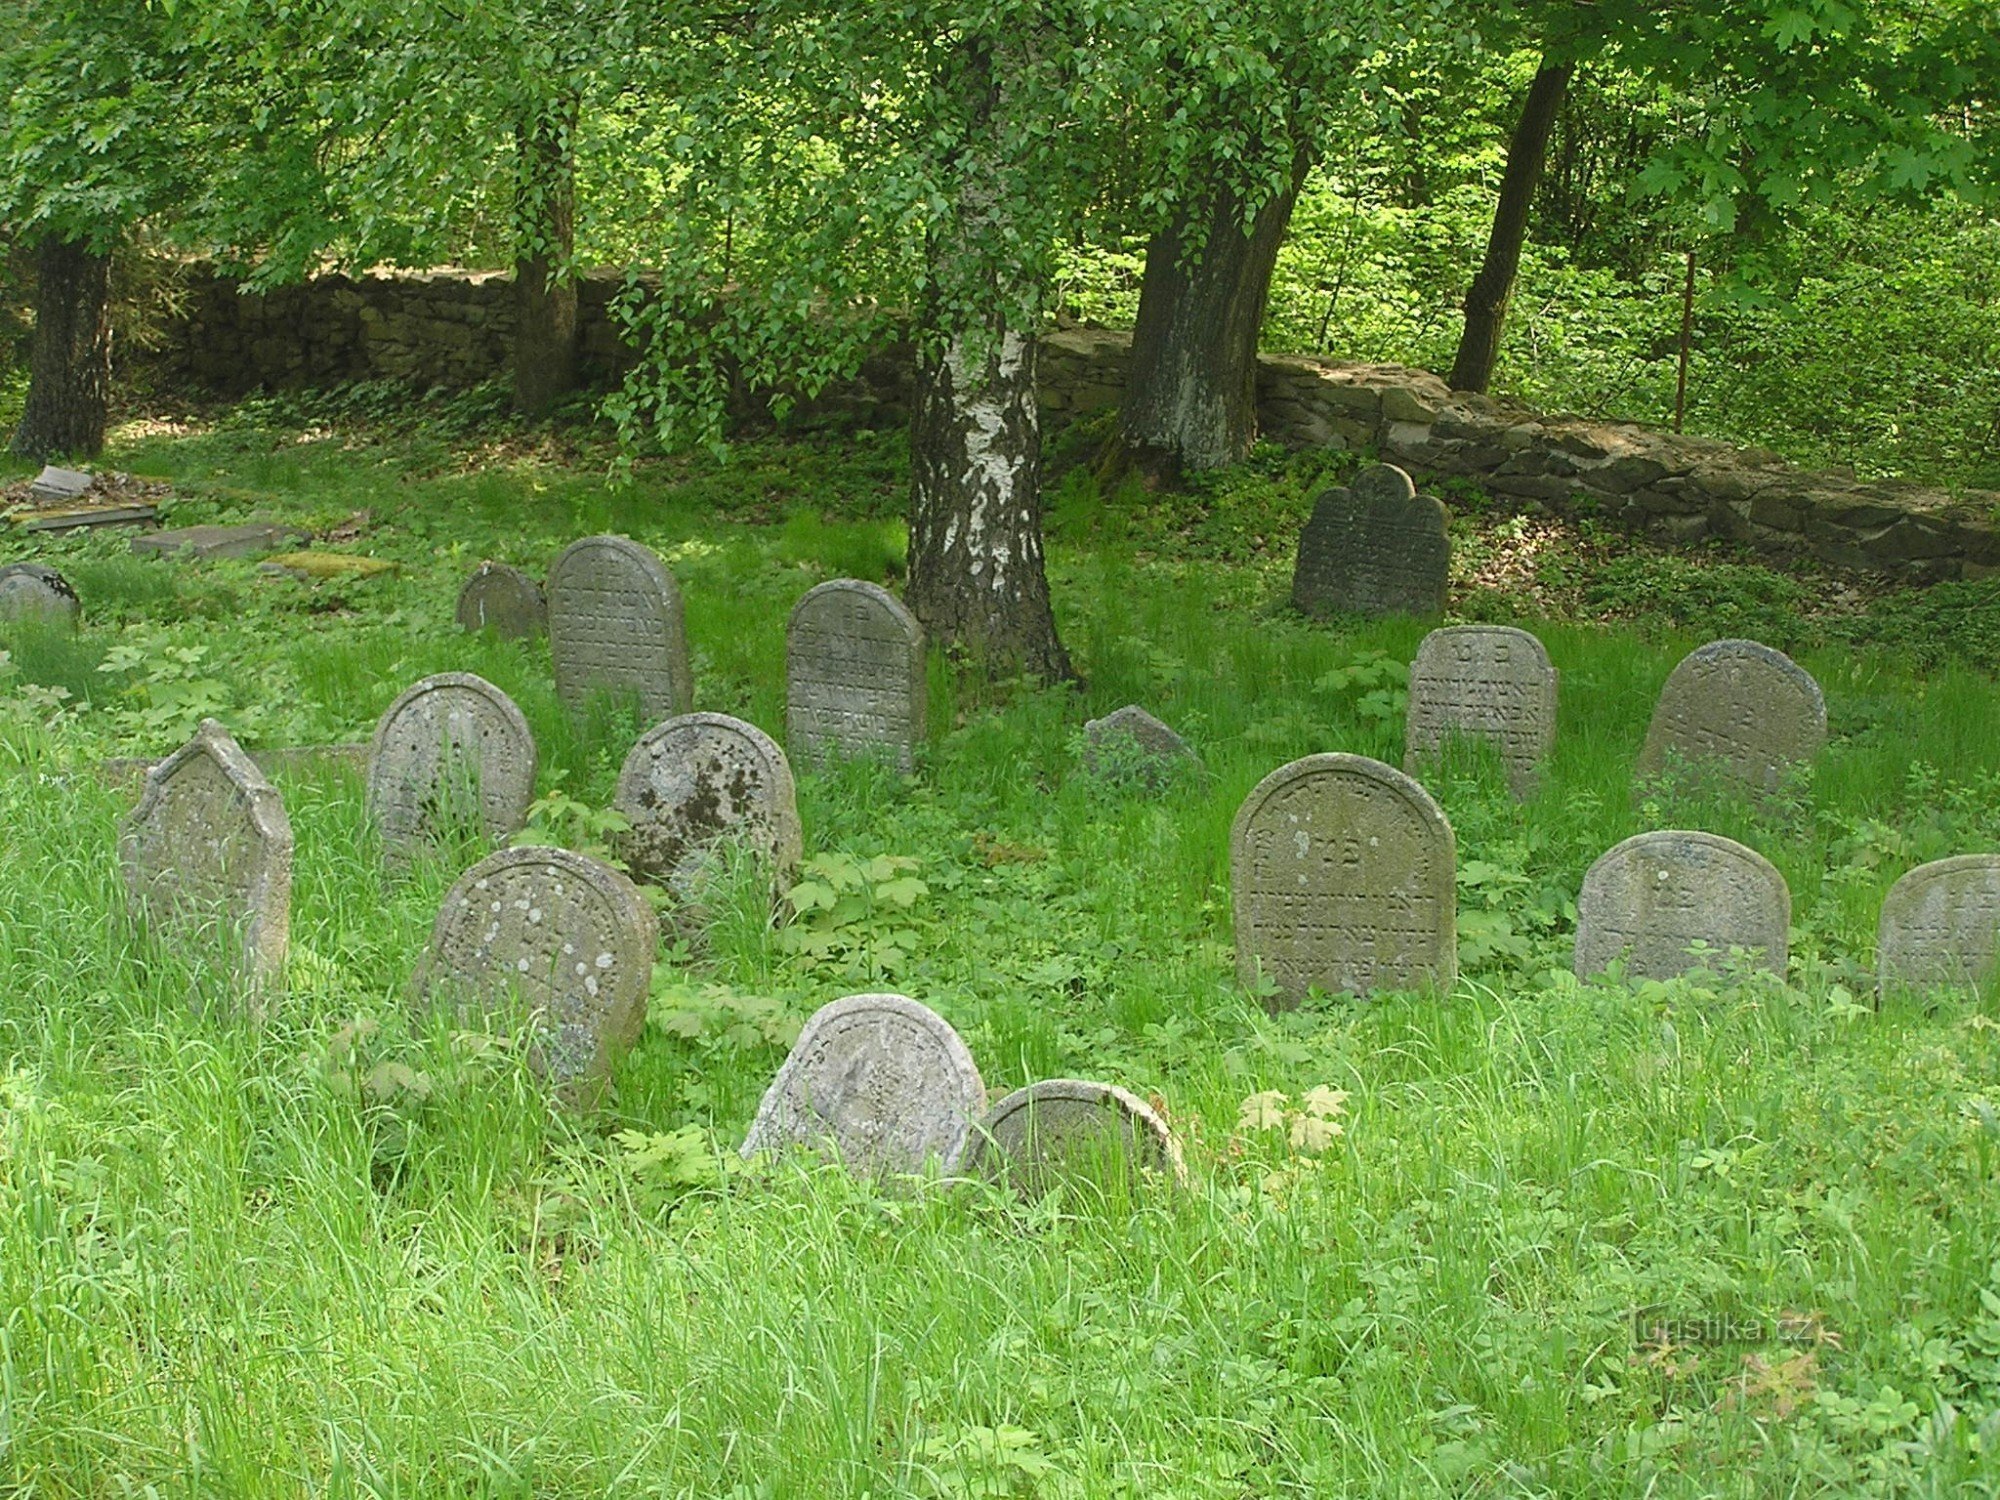 Židovský hřbitov - 9.5.2009